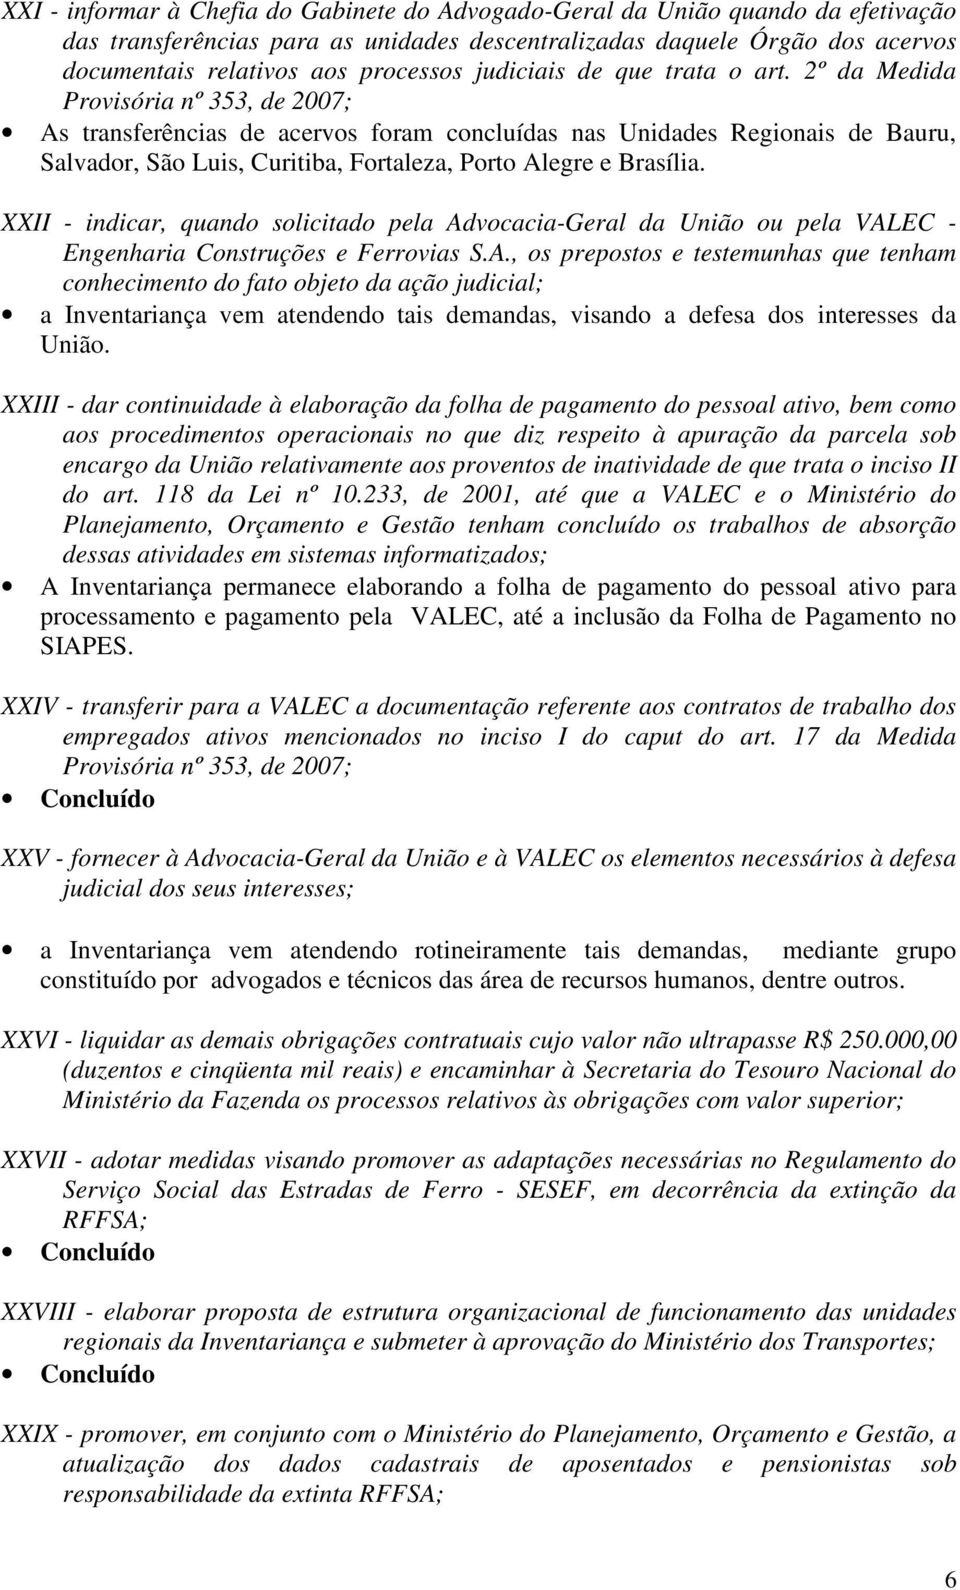 2º da Medida Provisória nº 353, de 2007; As transferências de acervos foram concluídas nas Unidades Regionais de Bauru, Salvador, São Luis, Curitiba, Fortaleza, Porto Alegre e Brasília.